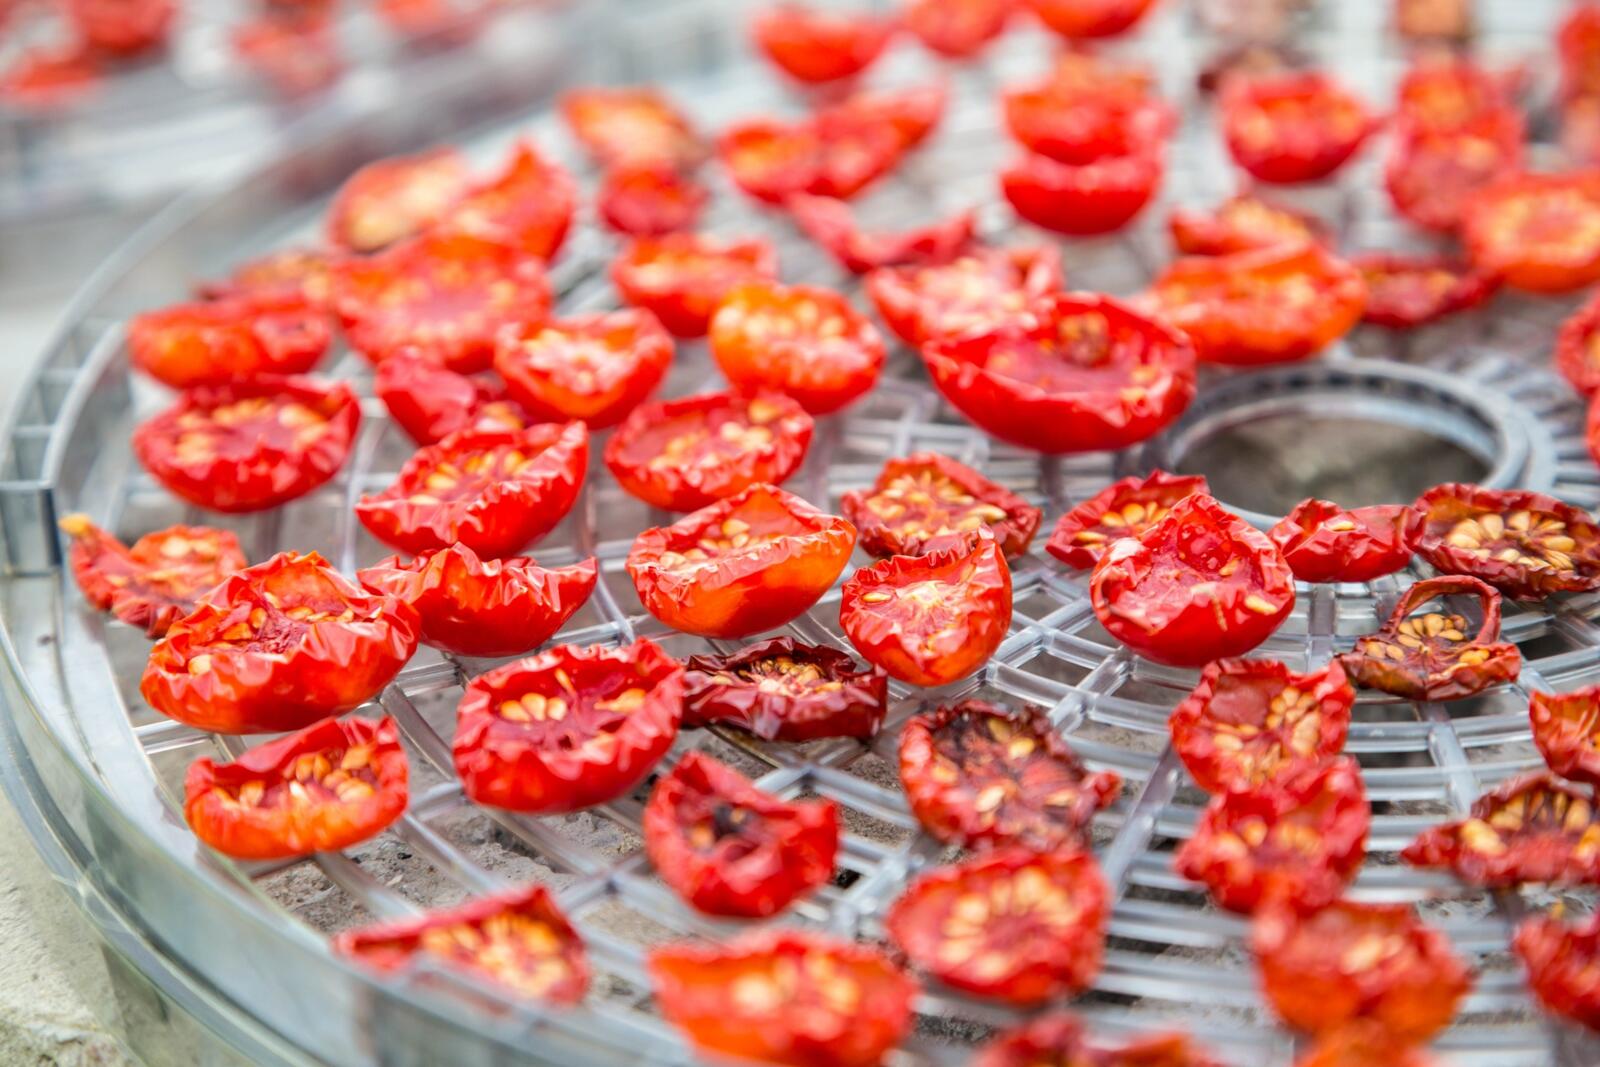 Dankzegging fee Lang Hoe bewaar ik best zelf gedroogde tomaten? Hebben jullie een tip? |  Dagelijkse kost